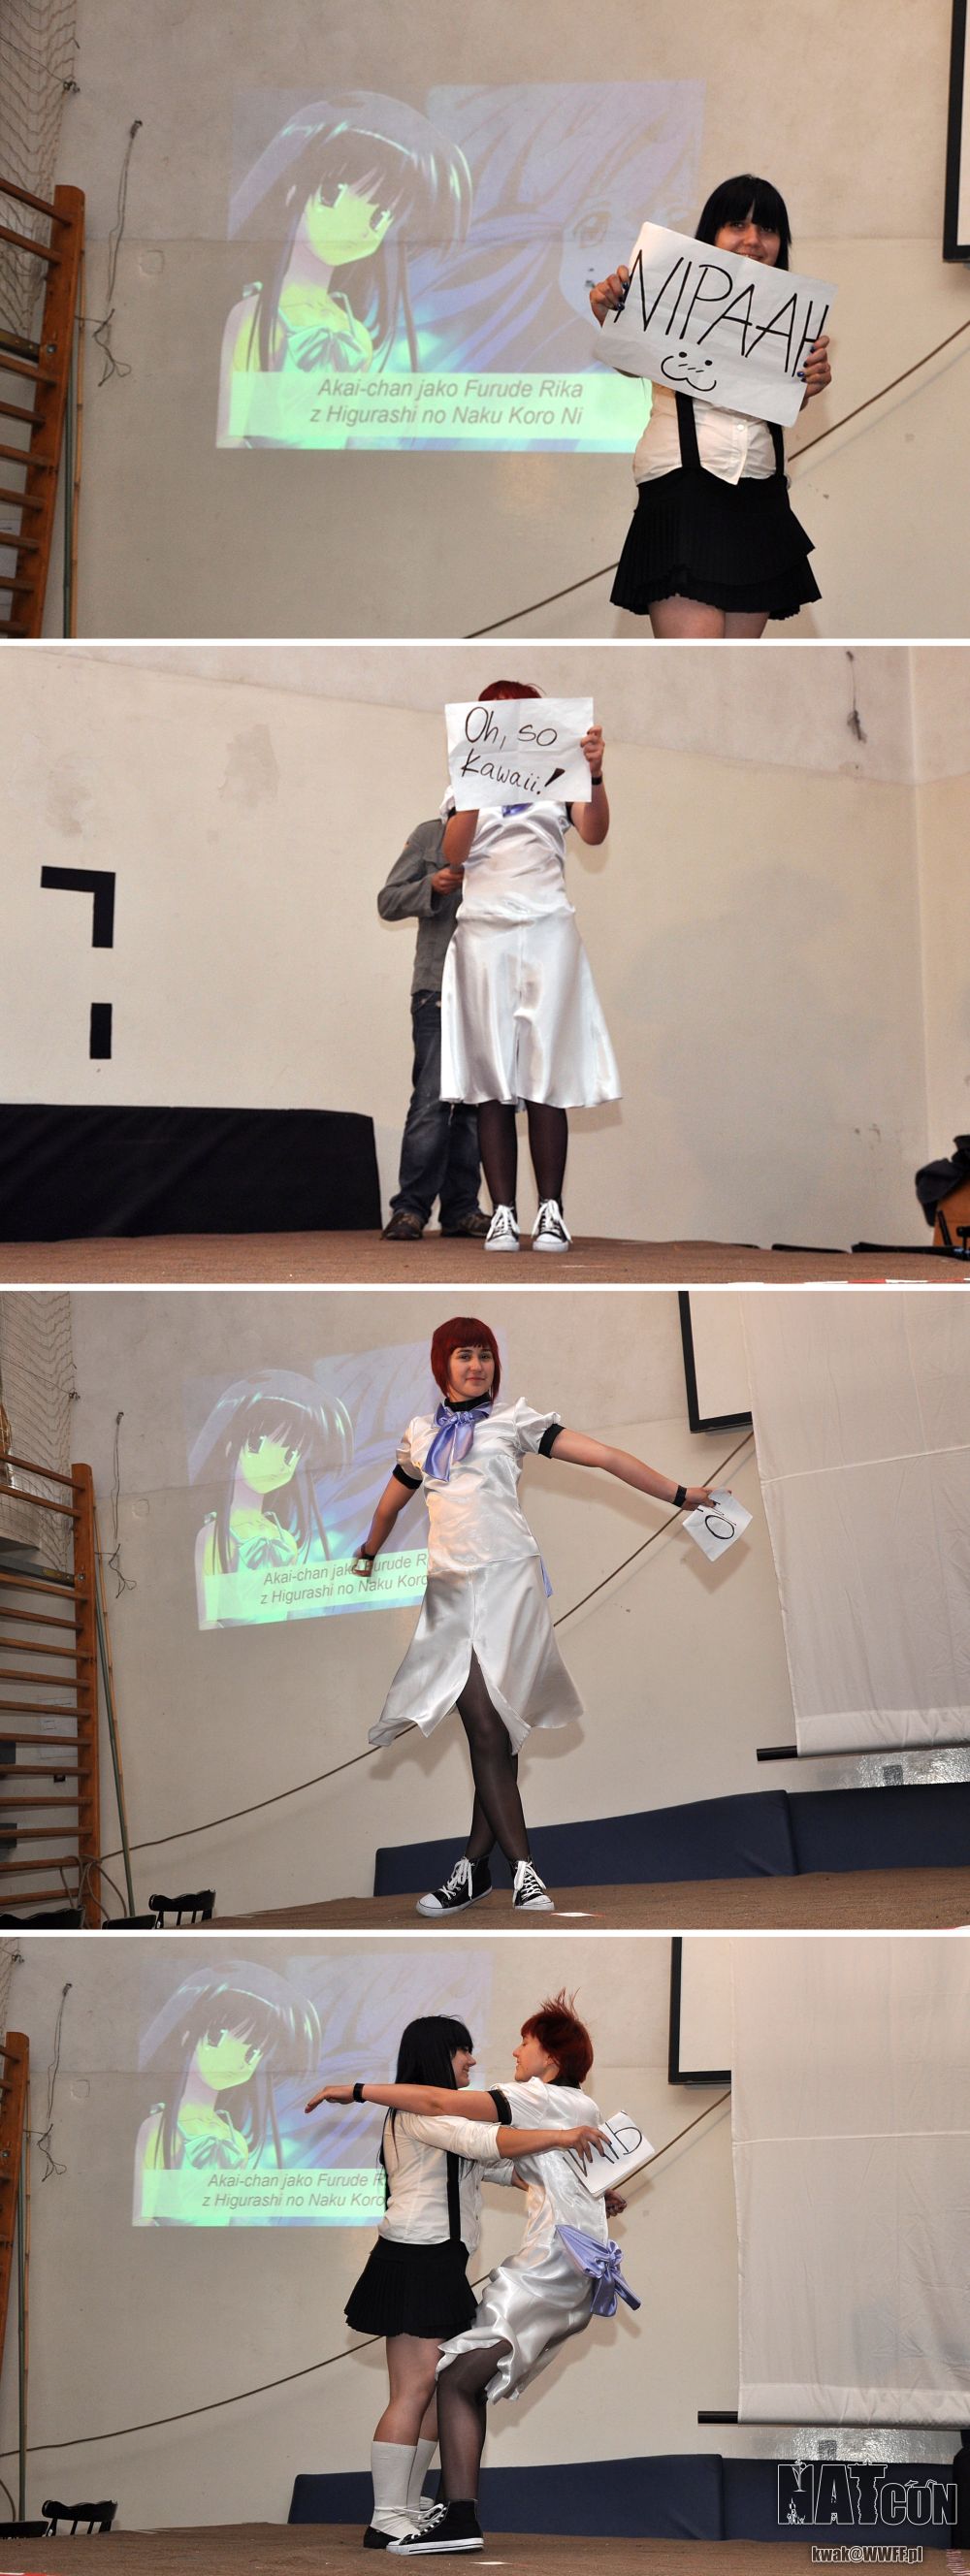 NATcon — cosplay (Kwak): Ryuuguu Rena i Furude Rika, Higurashi no Naku Koro Ni